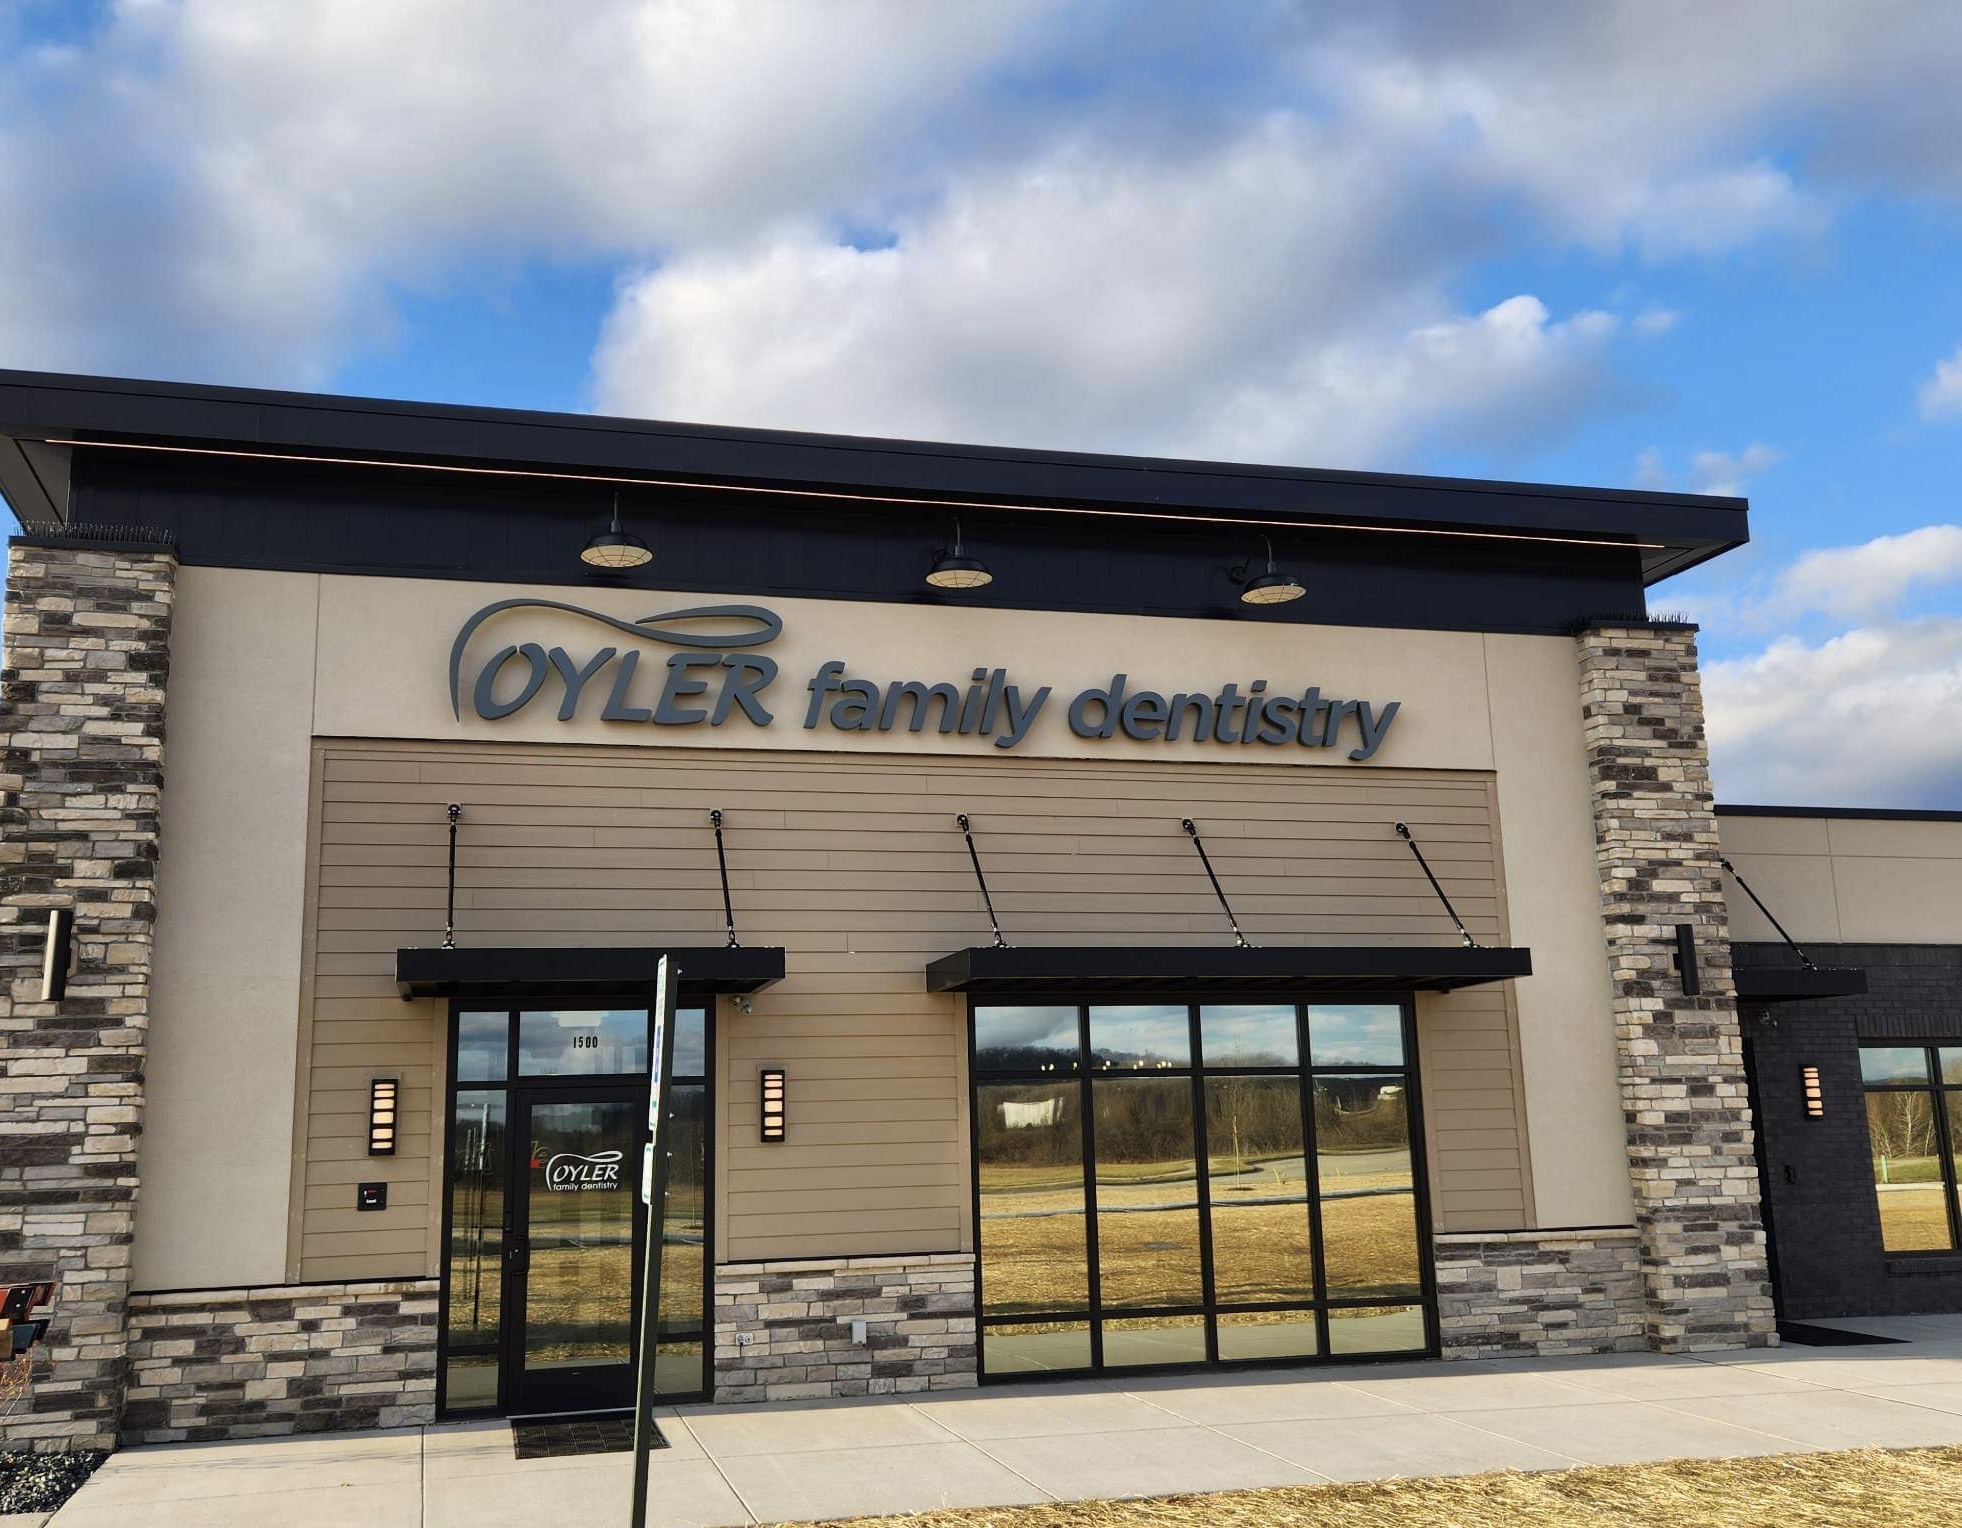 Oyler Family Dentistry